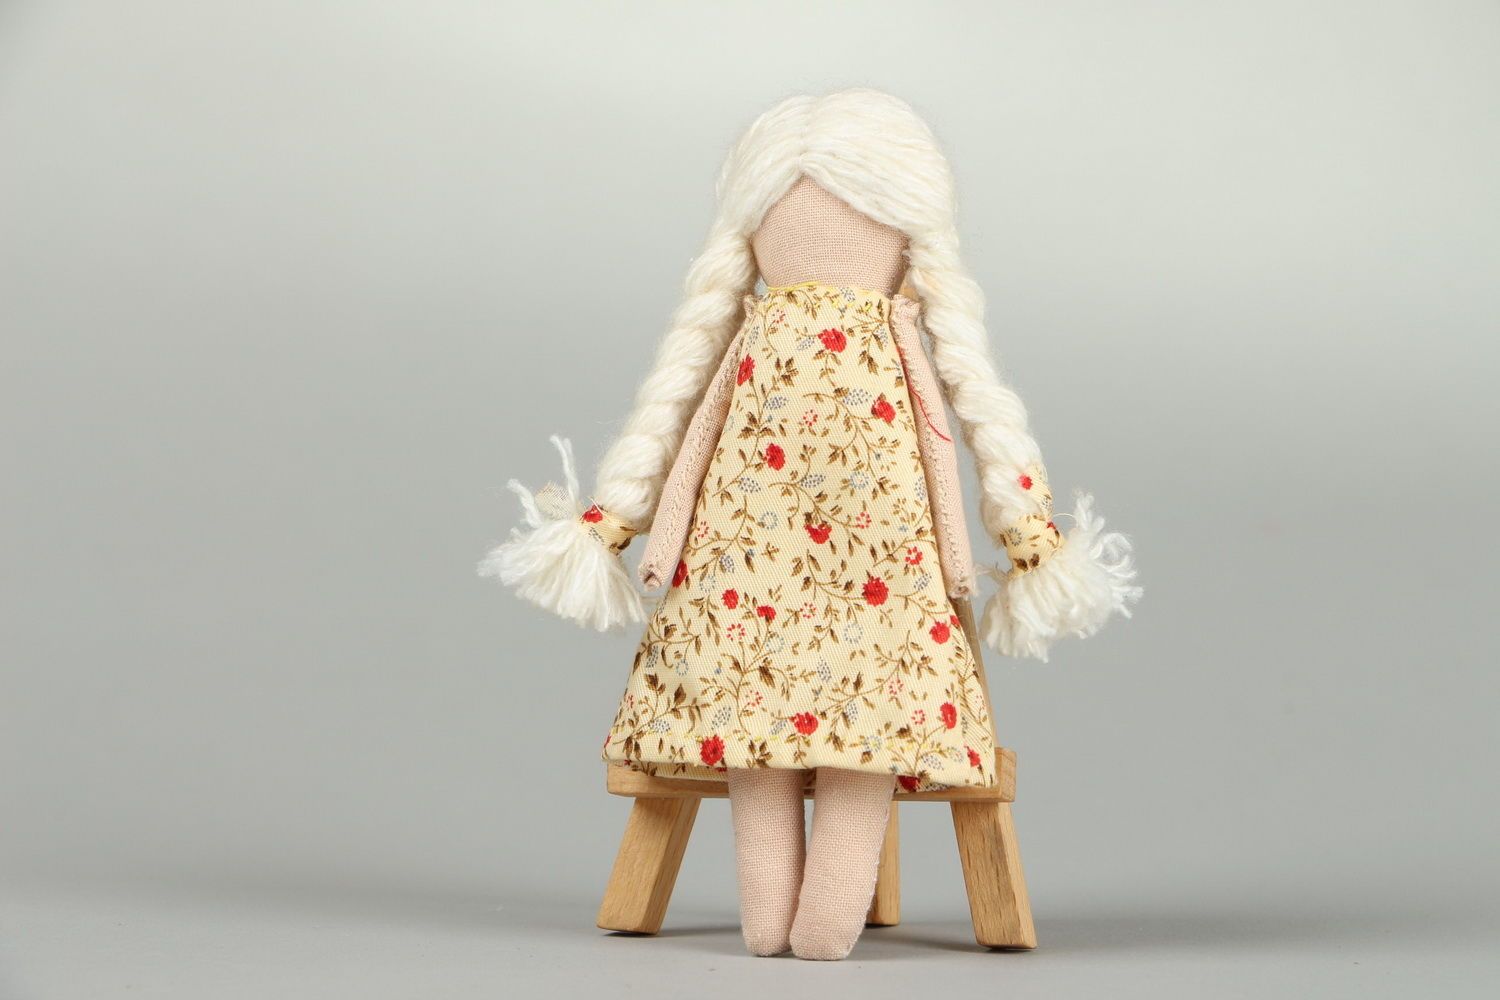 Primitive doll in dress photo 4